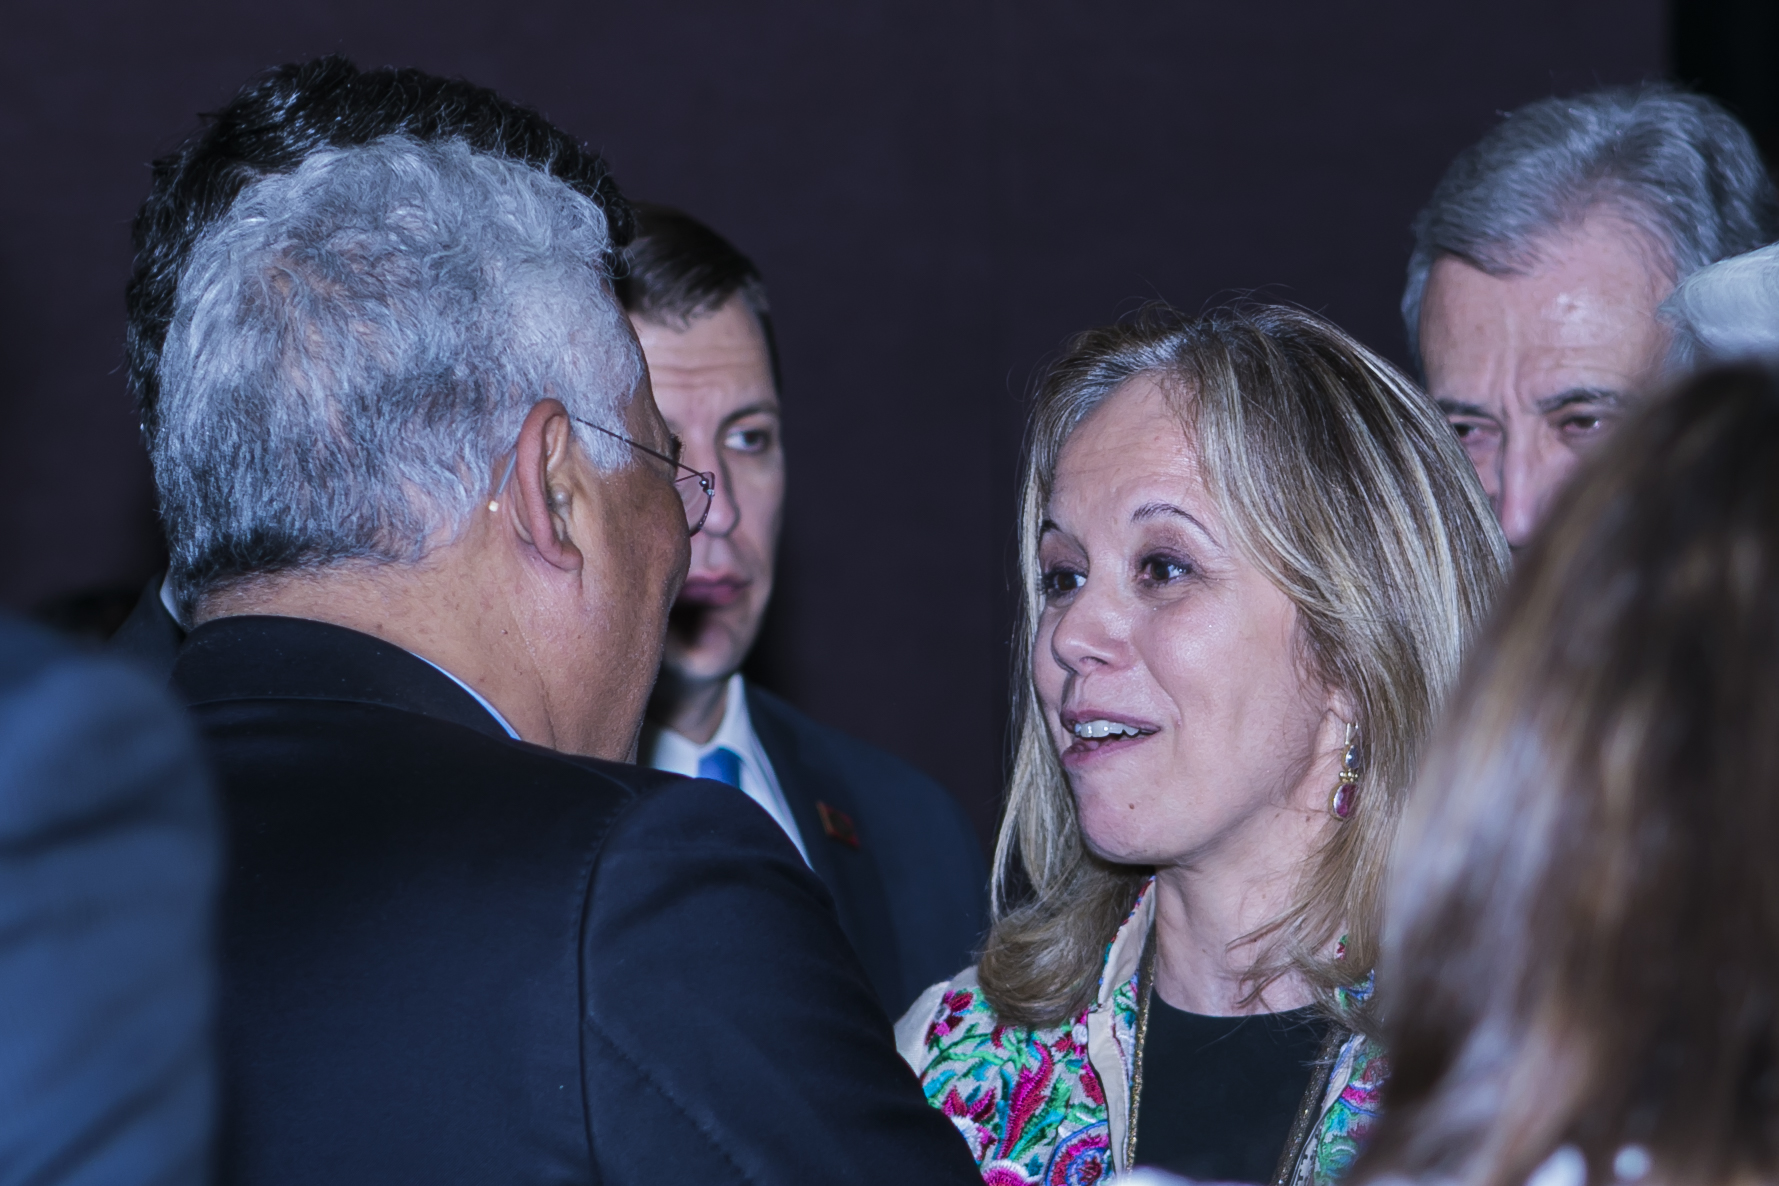 Event_2018 Portuguese Prime Minister Reception331